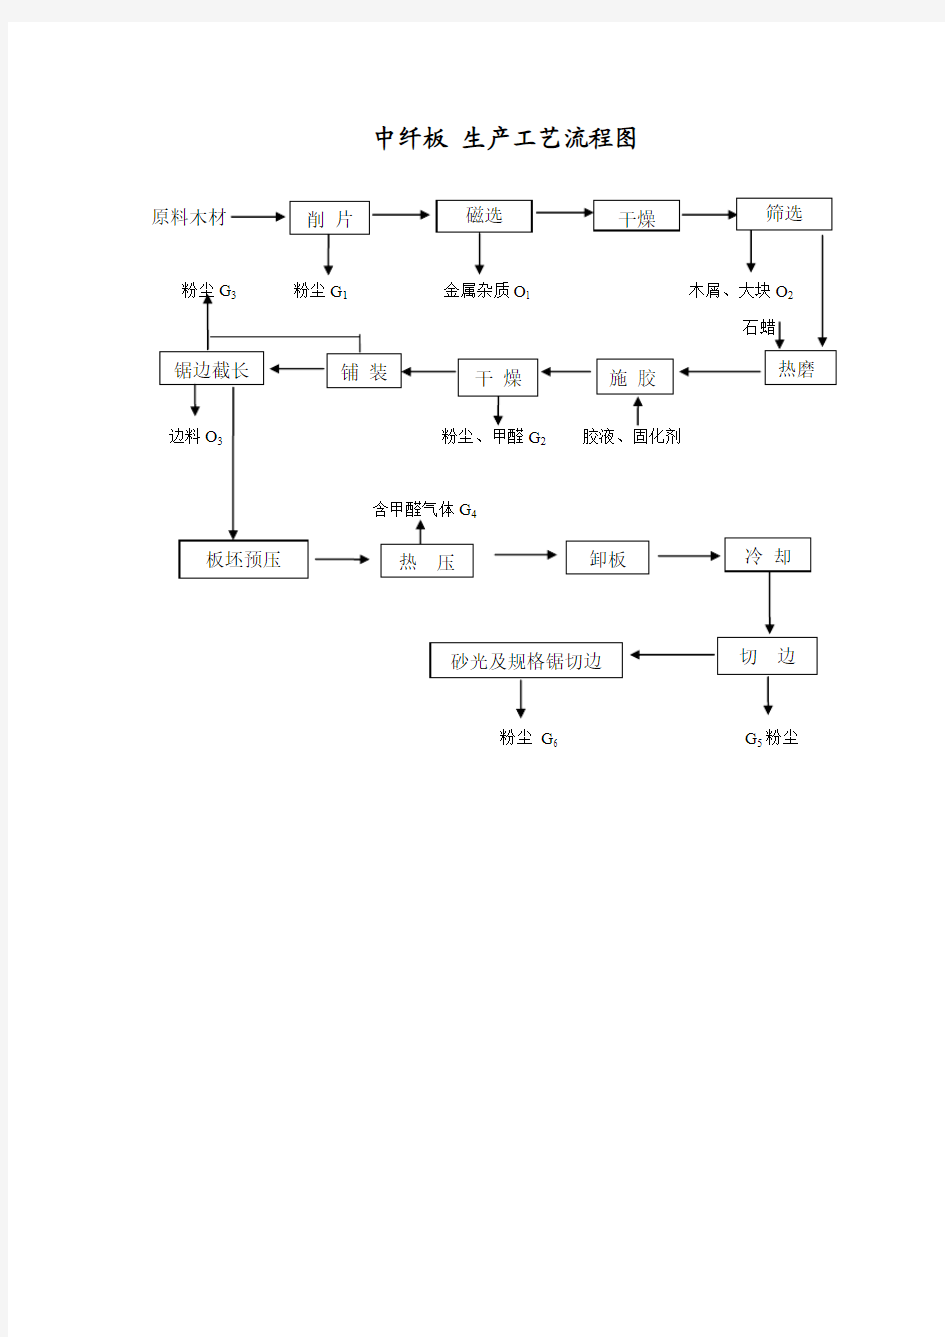 刨花板、人造板、中纤板生产线流程图(中英文)